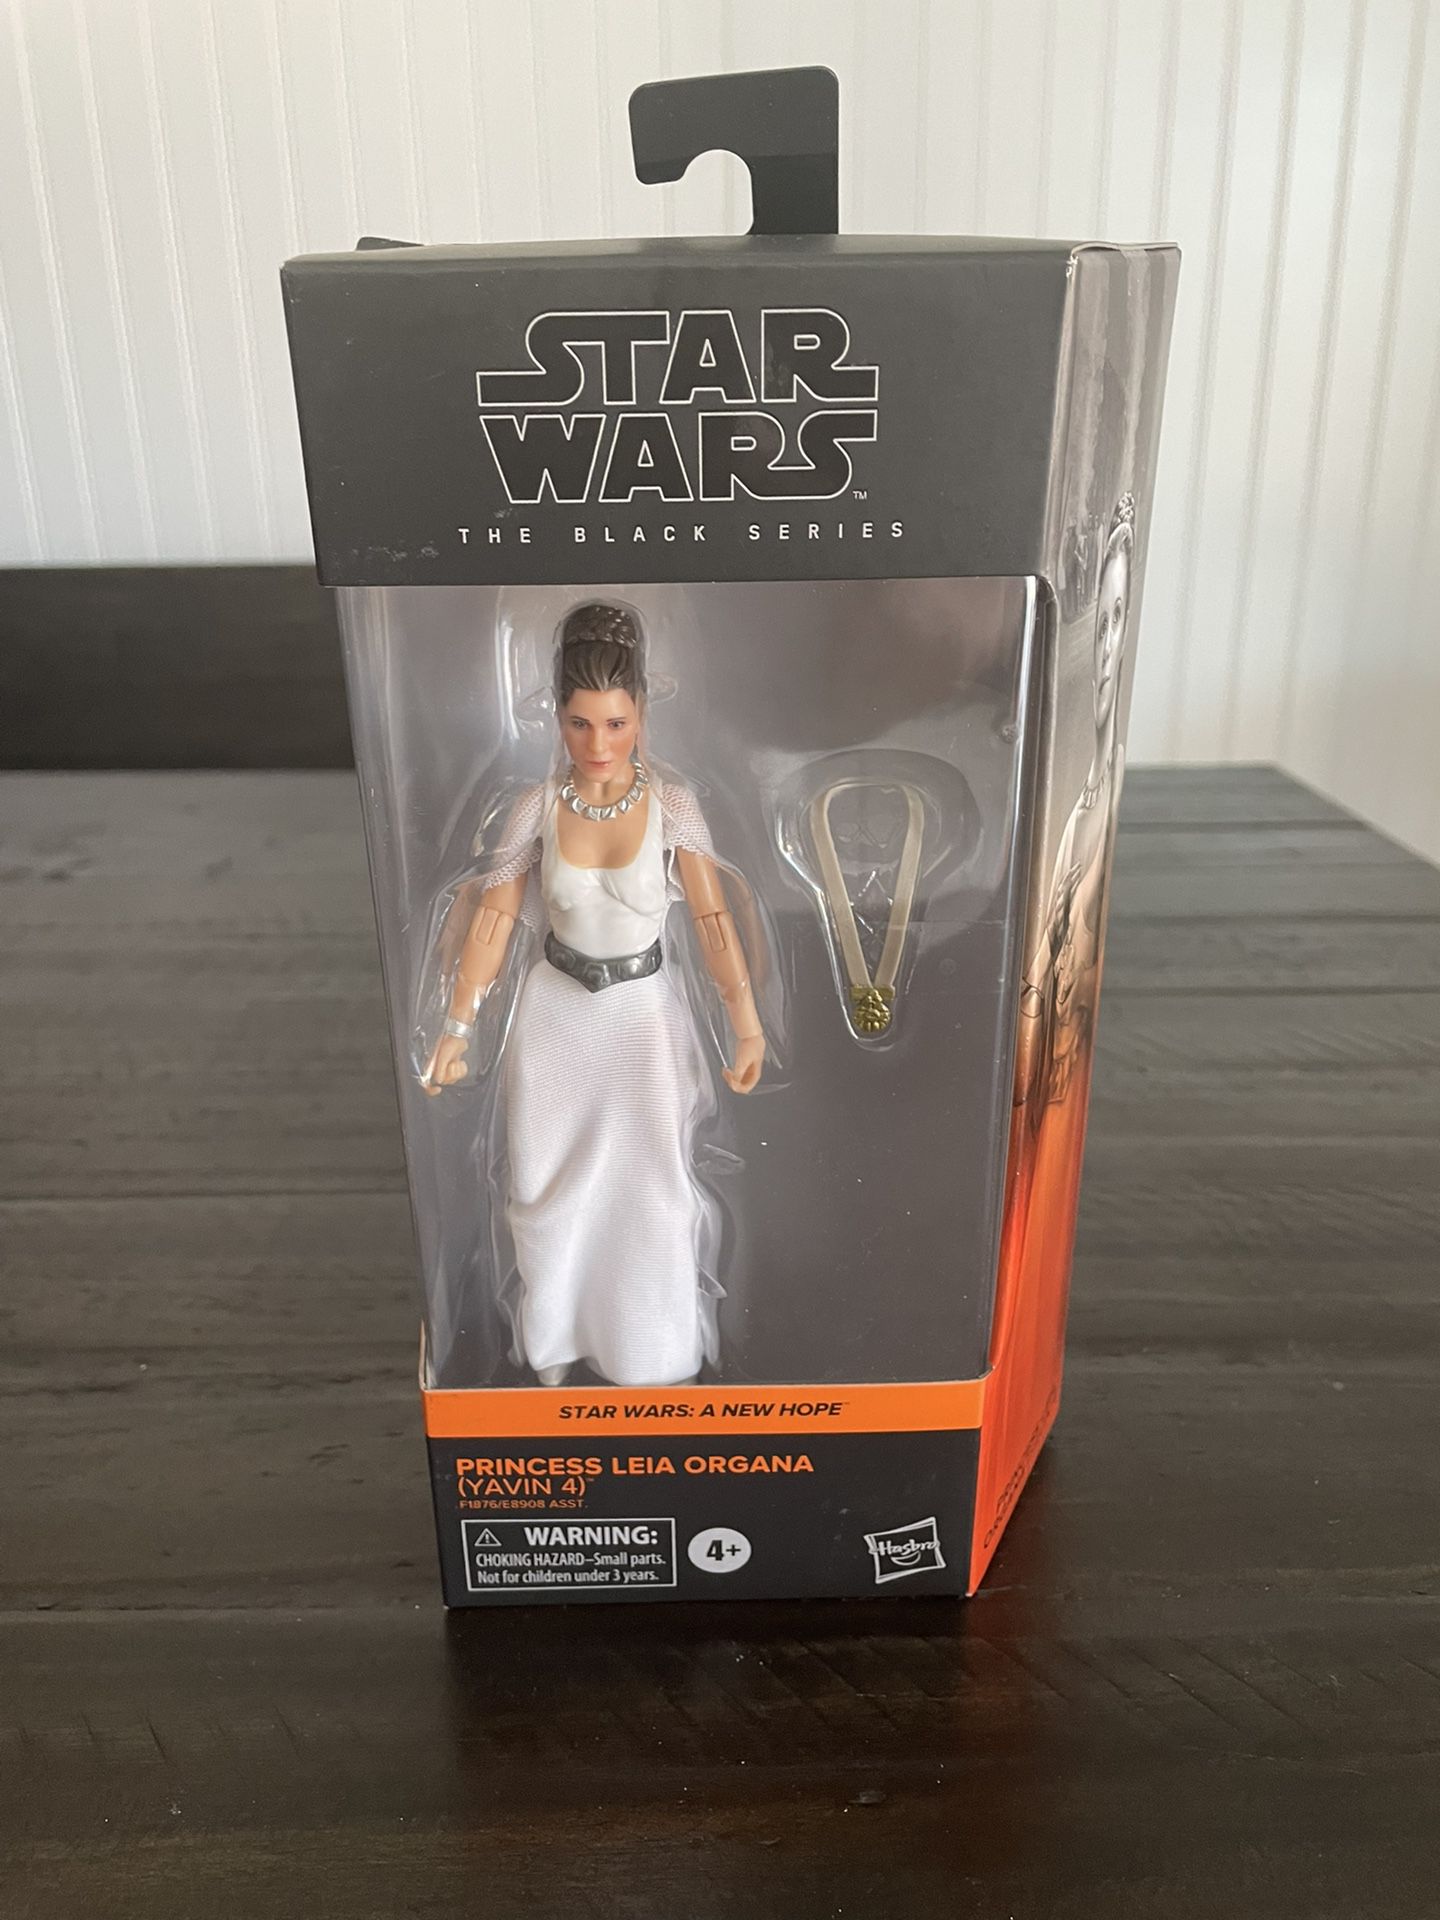 Star Wars Black Series Princess Leia (Yavin IV)